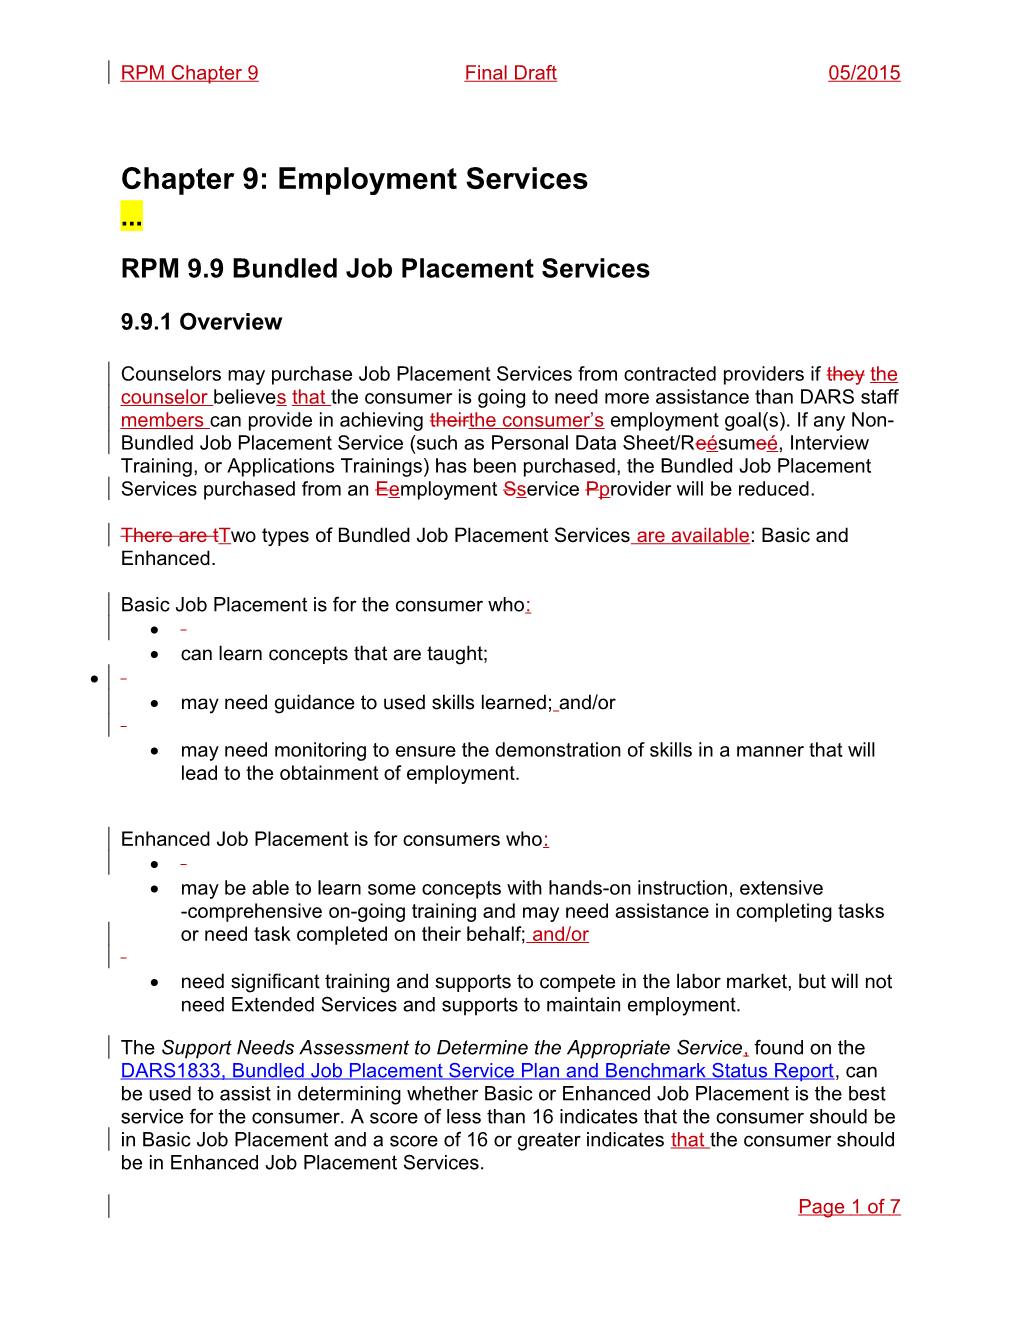 RPM 9.9 Bundled Job Placement Services